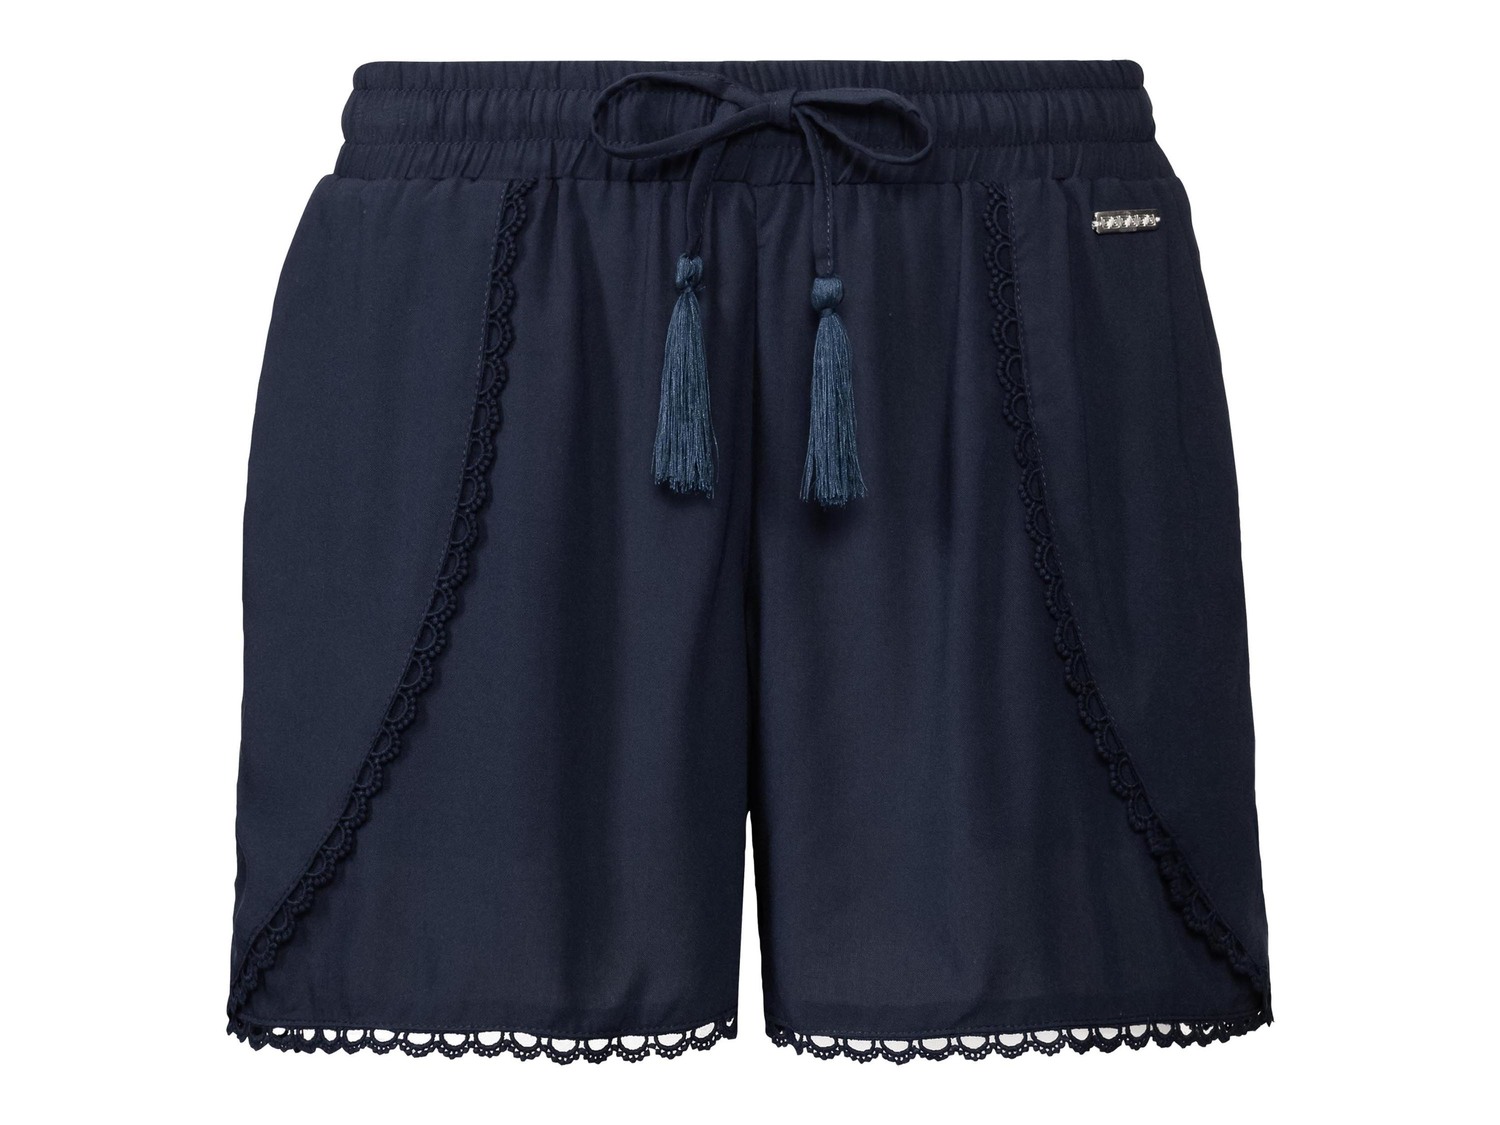 Shorts da donna Esmara, prezzo 4.99 &#8364;  
-  In pura viscosa
- Oeko tex NEW